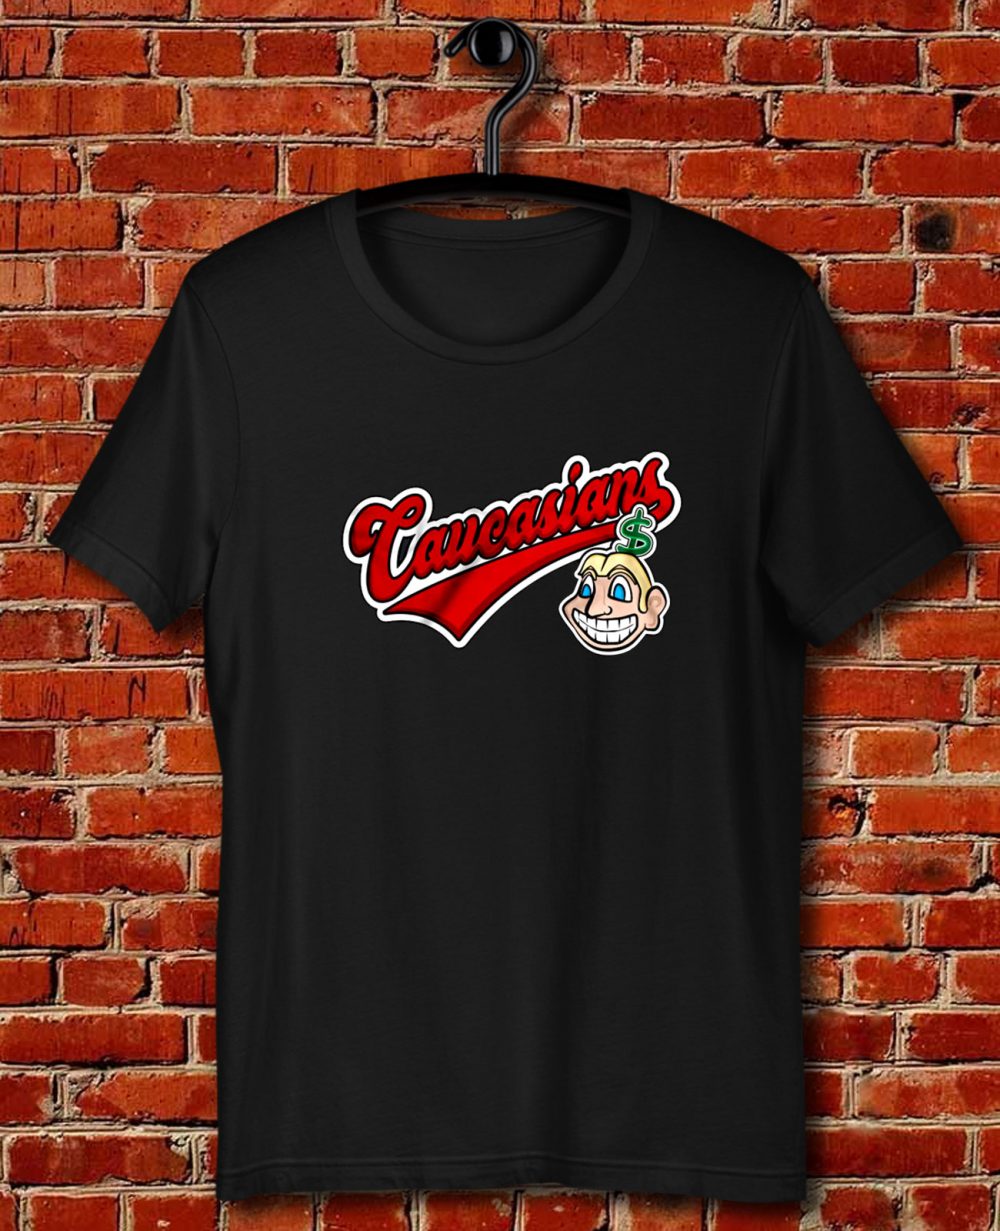 Caucasians Baseball Quote Unisex T Shirt - Quotysee.com